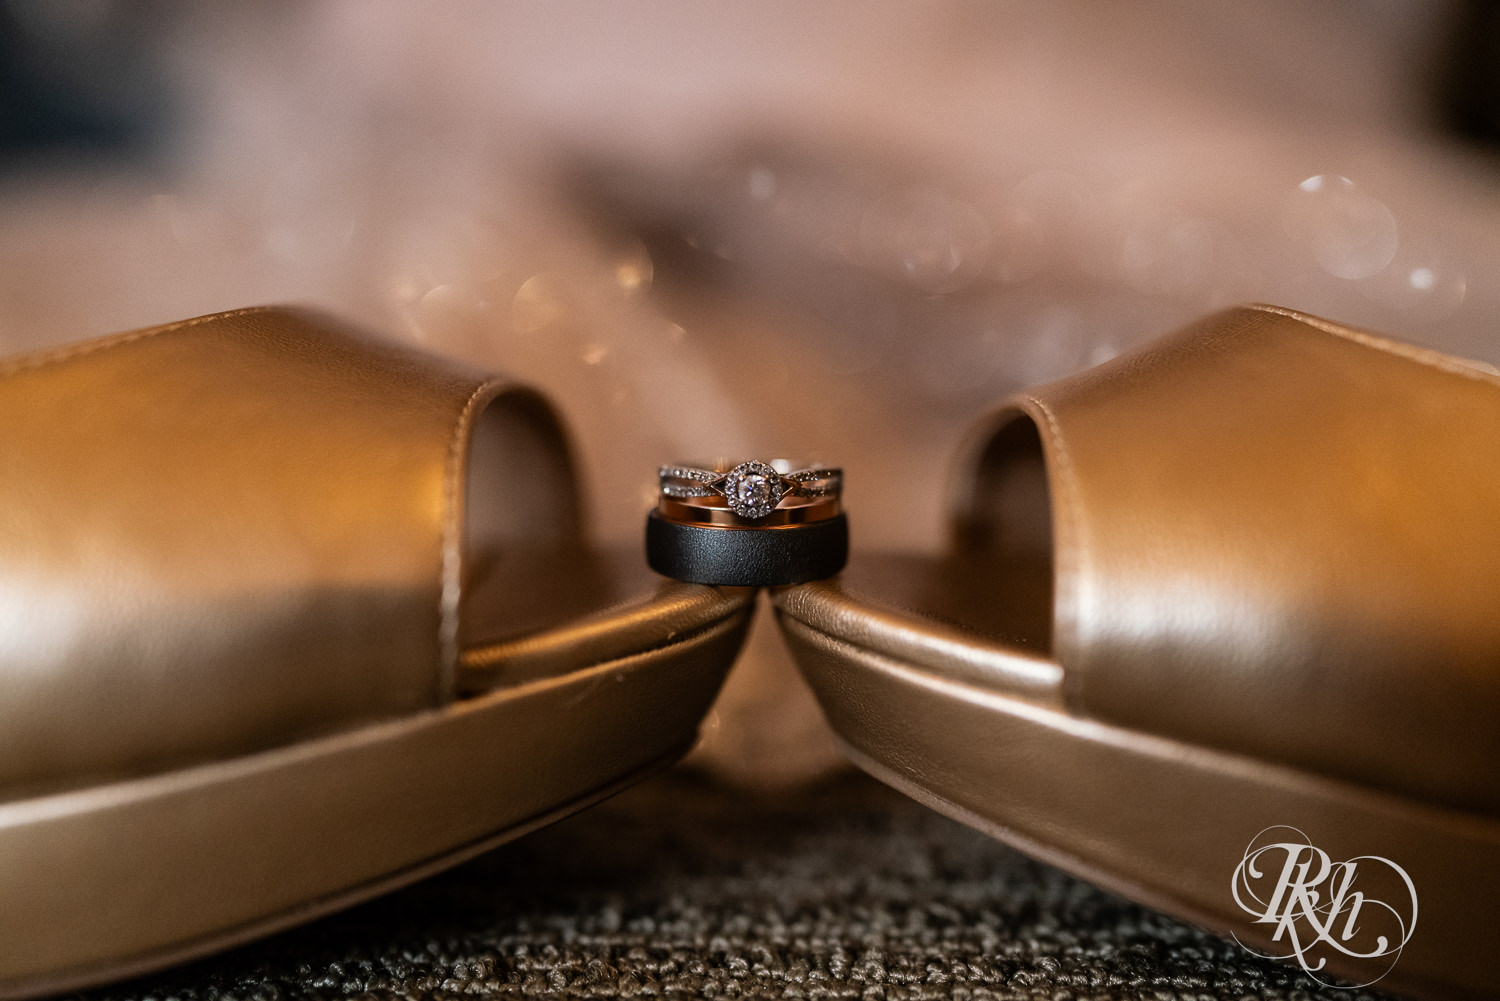 Wedding rings at Kellerman's Event Center in White Bear Lake, Minnesota.